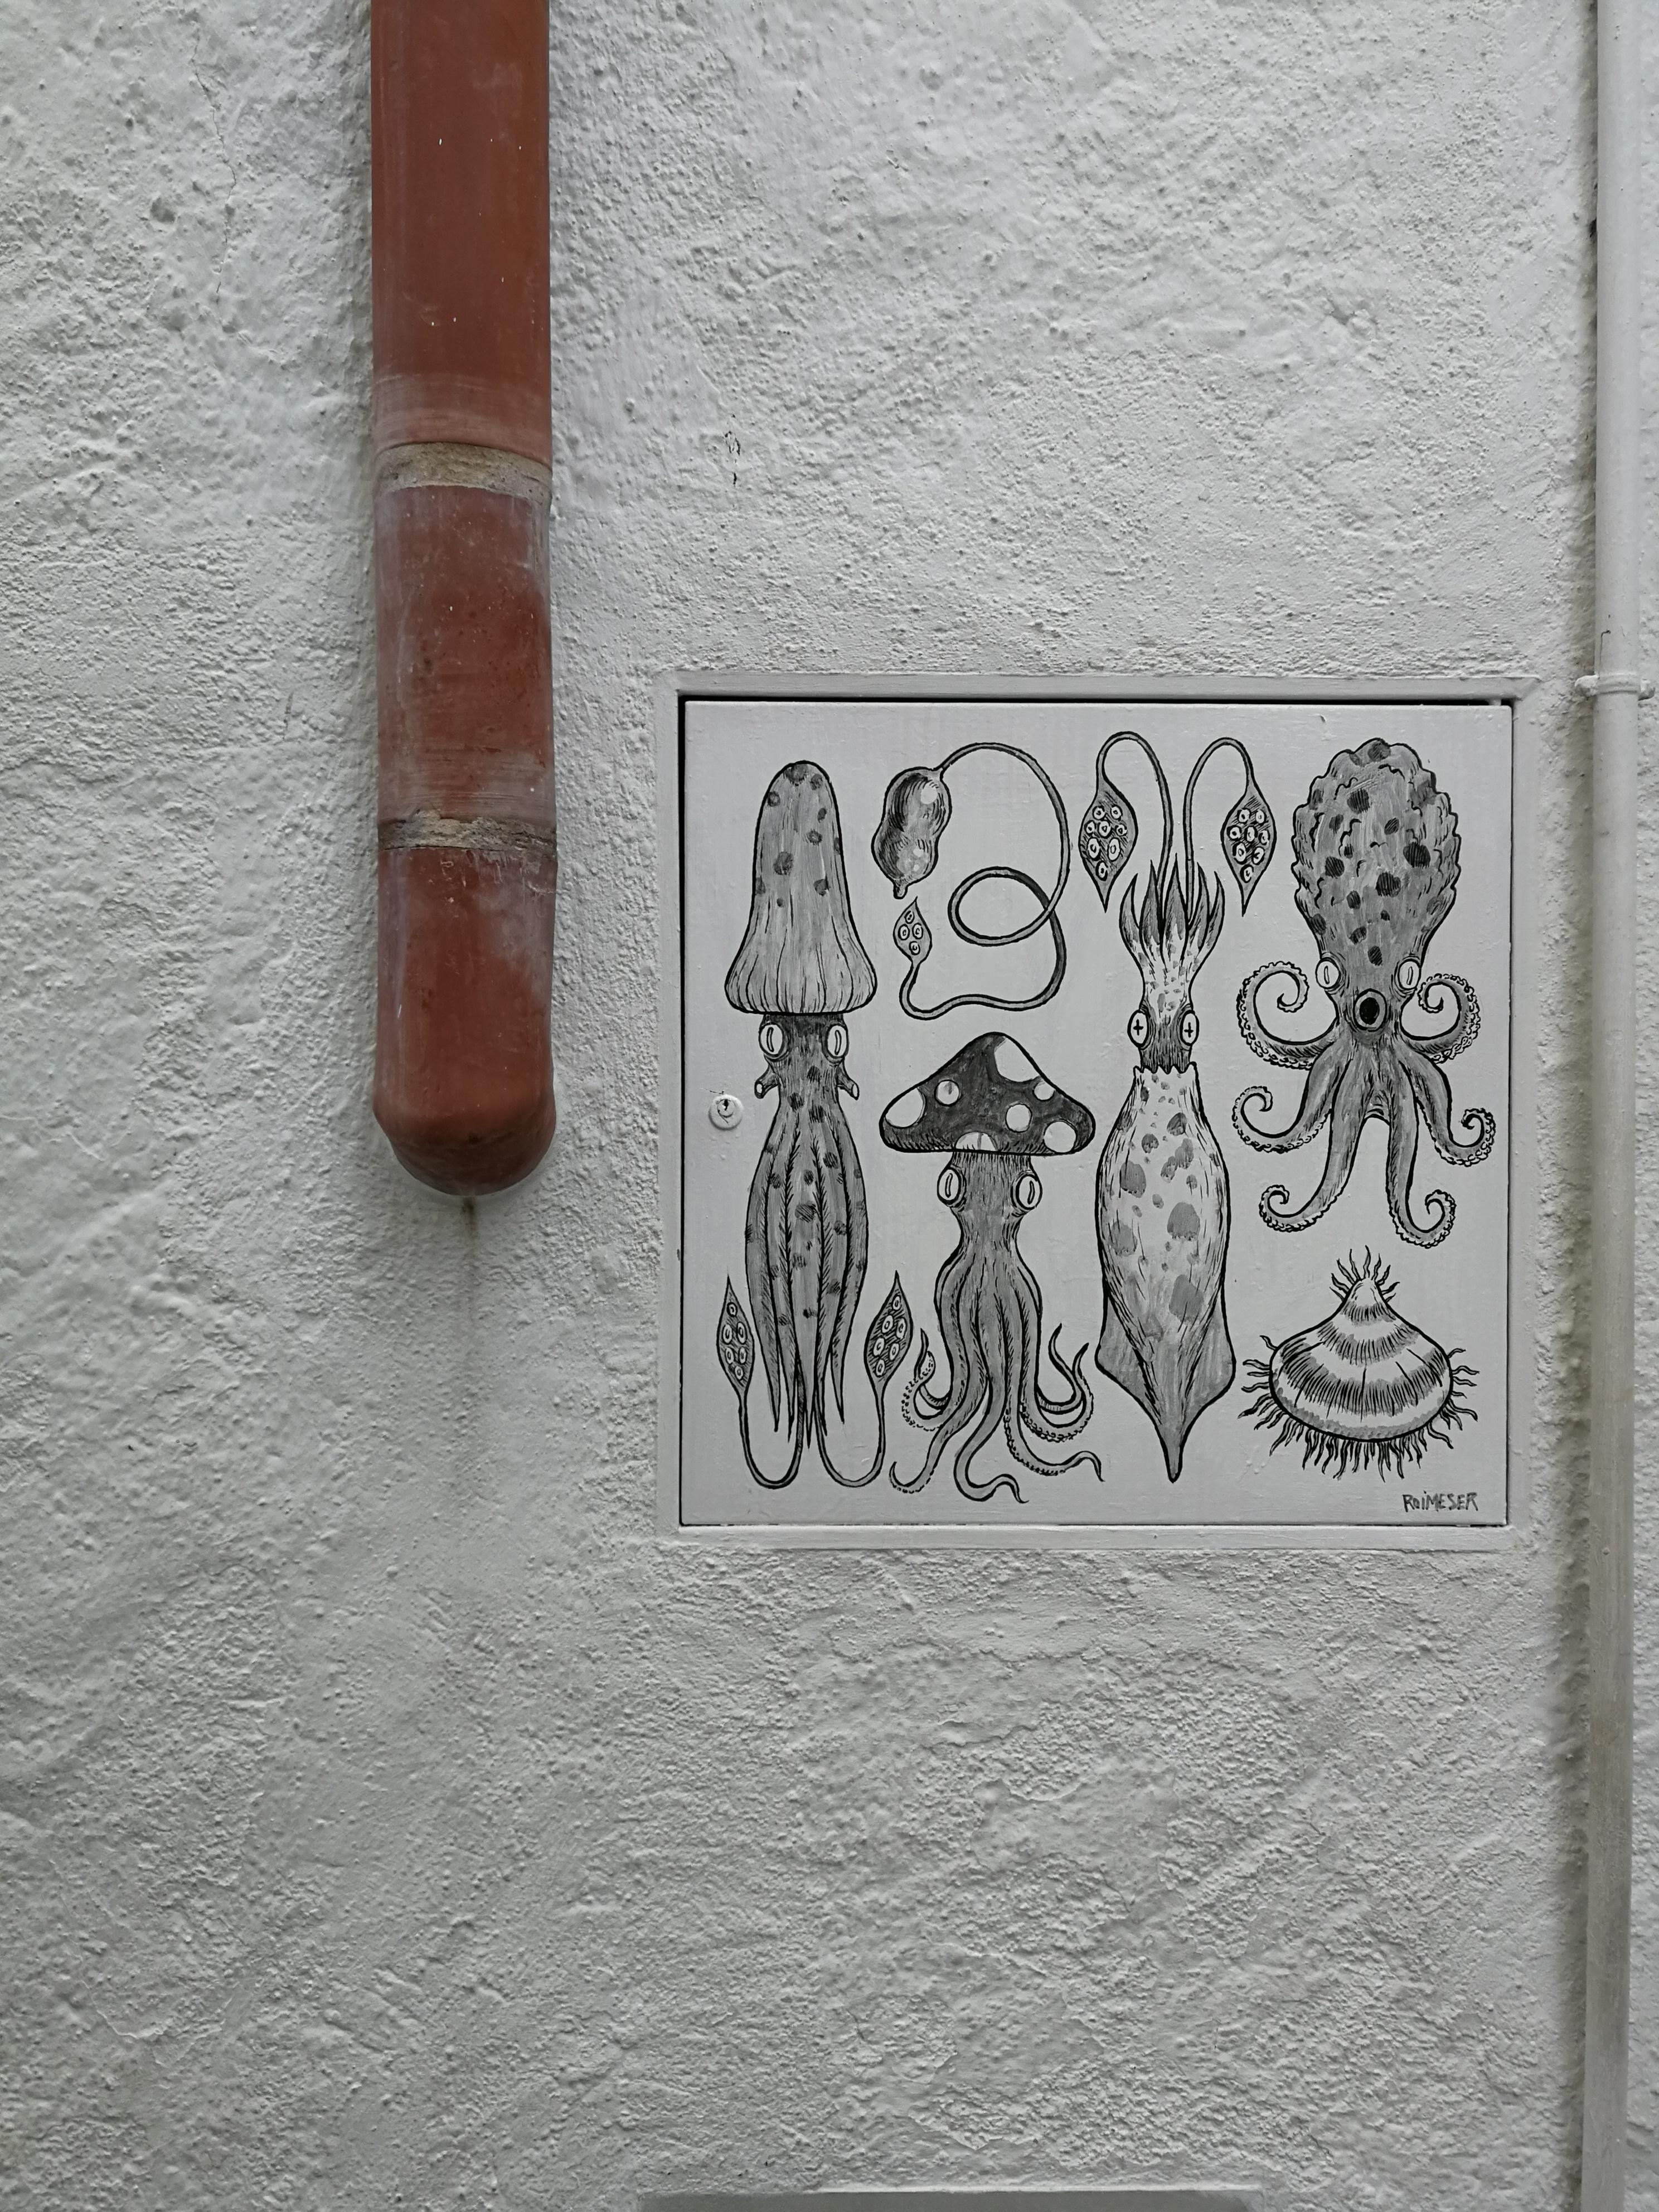 Auf den Spuren von Dali #Cadaqués #Urlaub #Katalonien #streetart